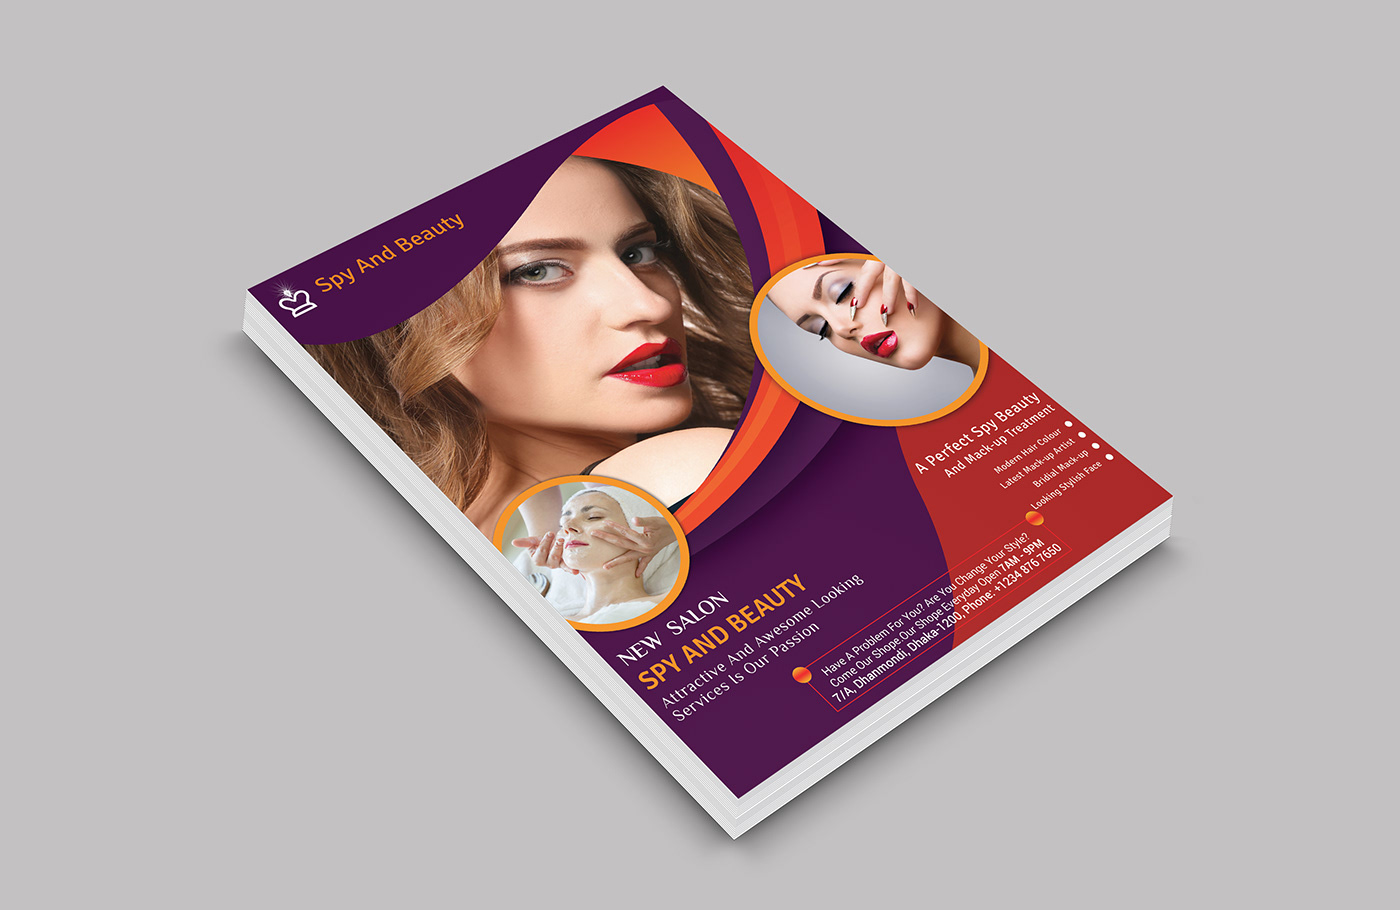 SPA AND BEAUTY flyer Spa beauty beauty salon skinn therapy spa poster Spa Promotion beauty care spa flyer